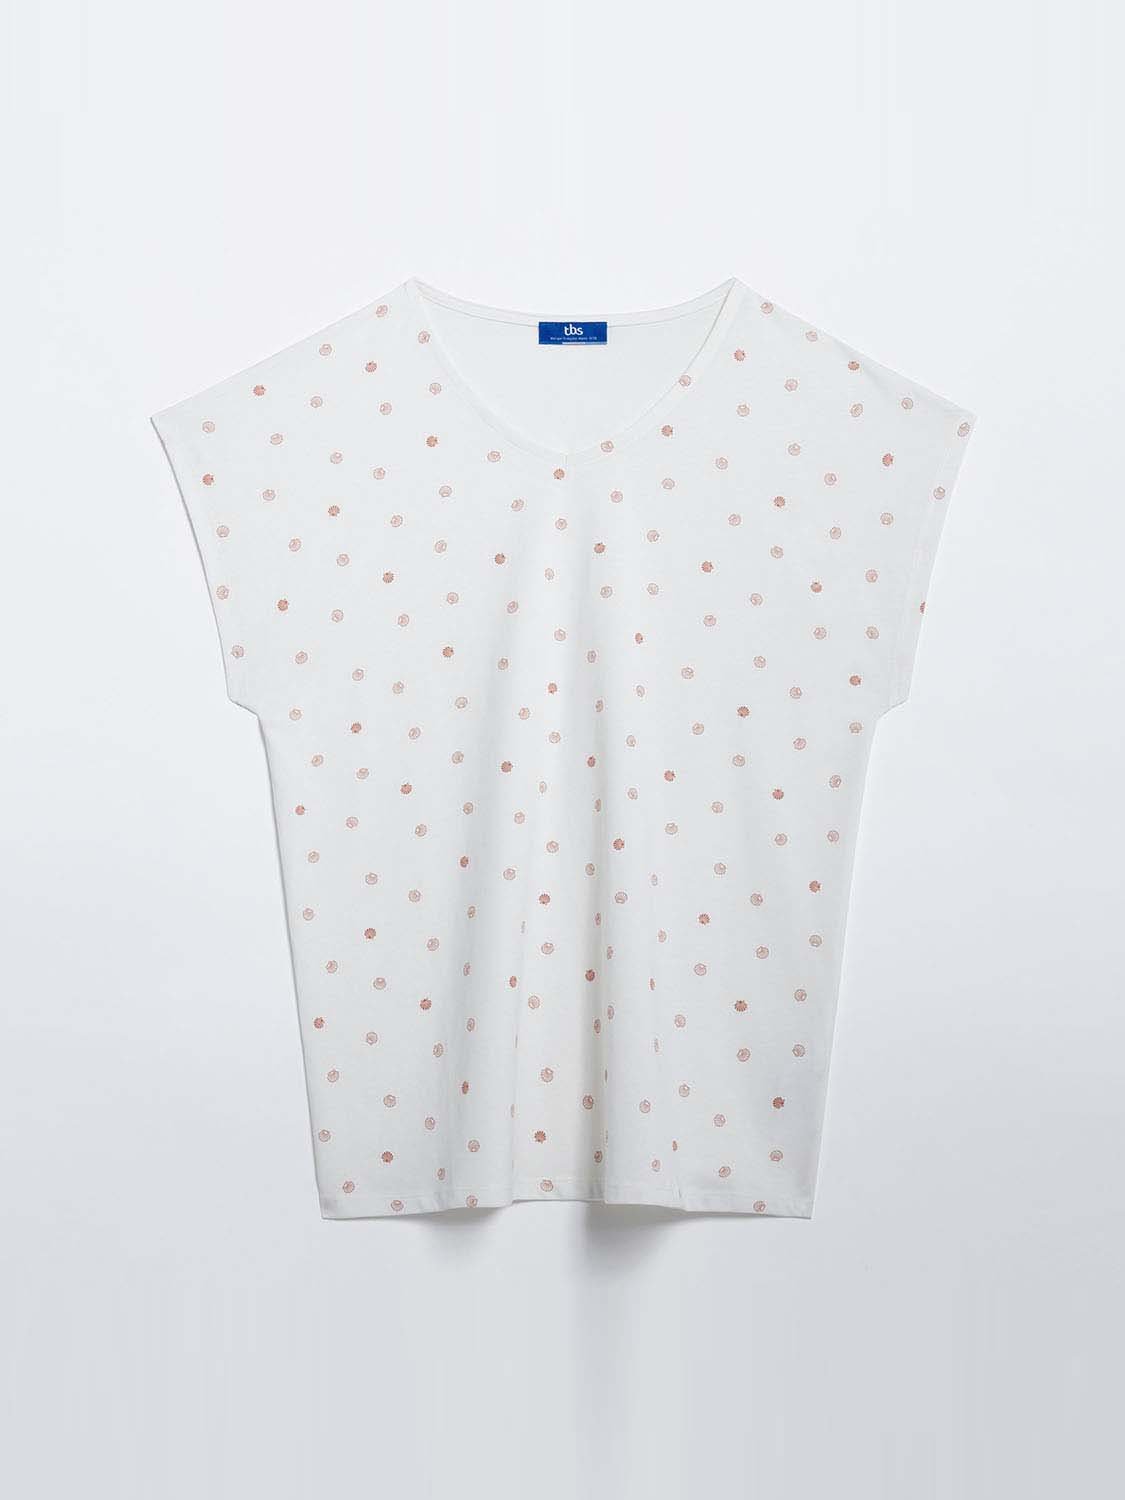 Tee shirt Femme Motif Coton Biologique Blanc